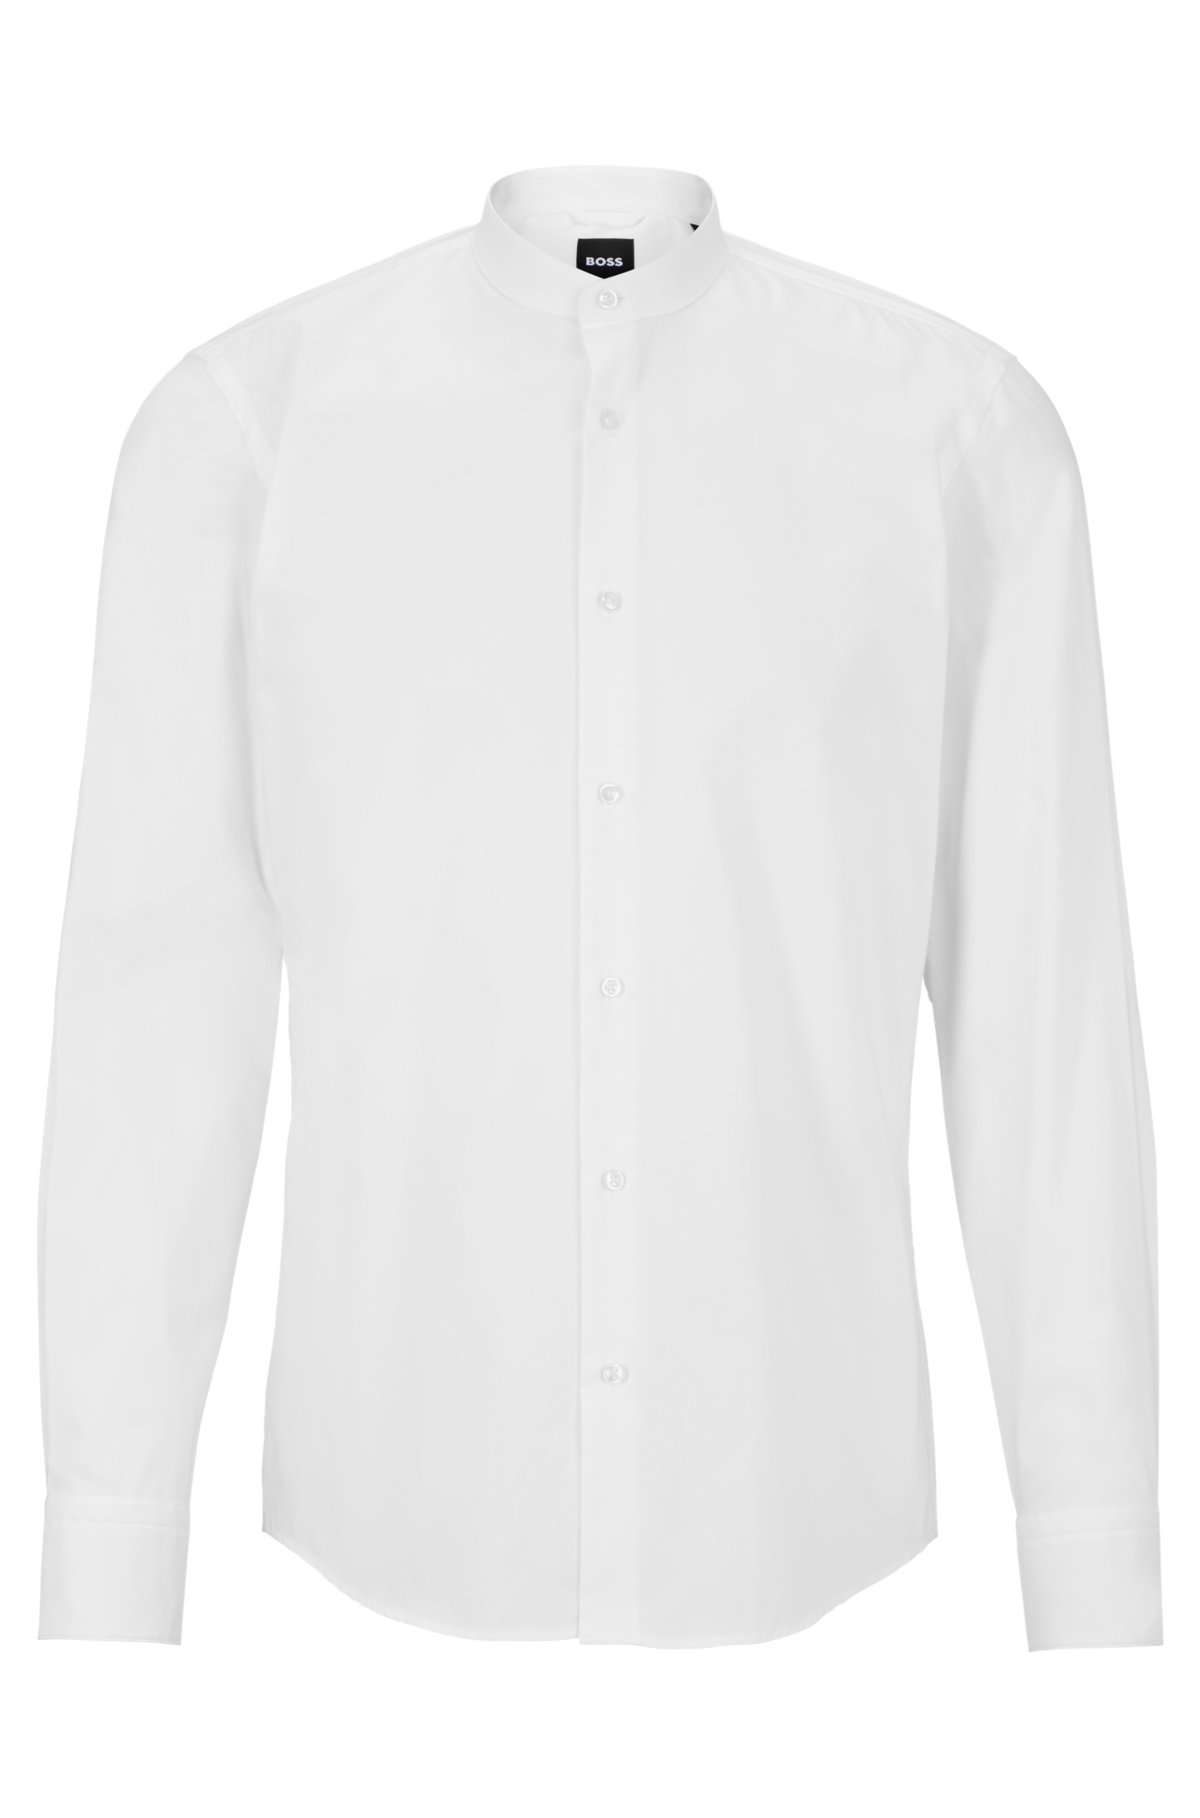 democratische Partij Boekhouding beginsel BOSS - Slim-fit shirt in easy-iron cotton poplin